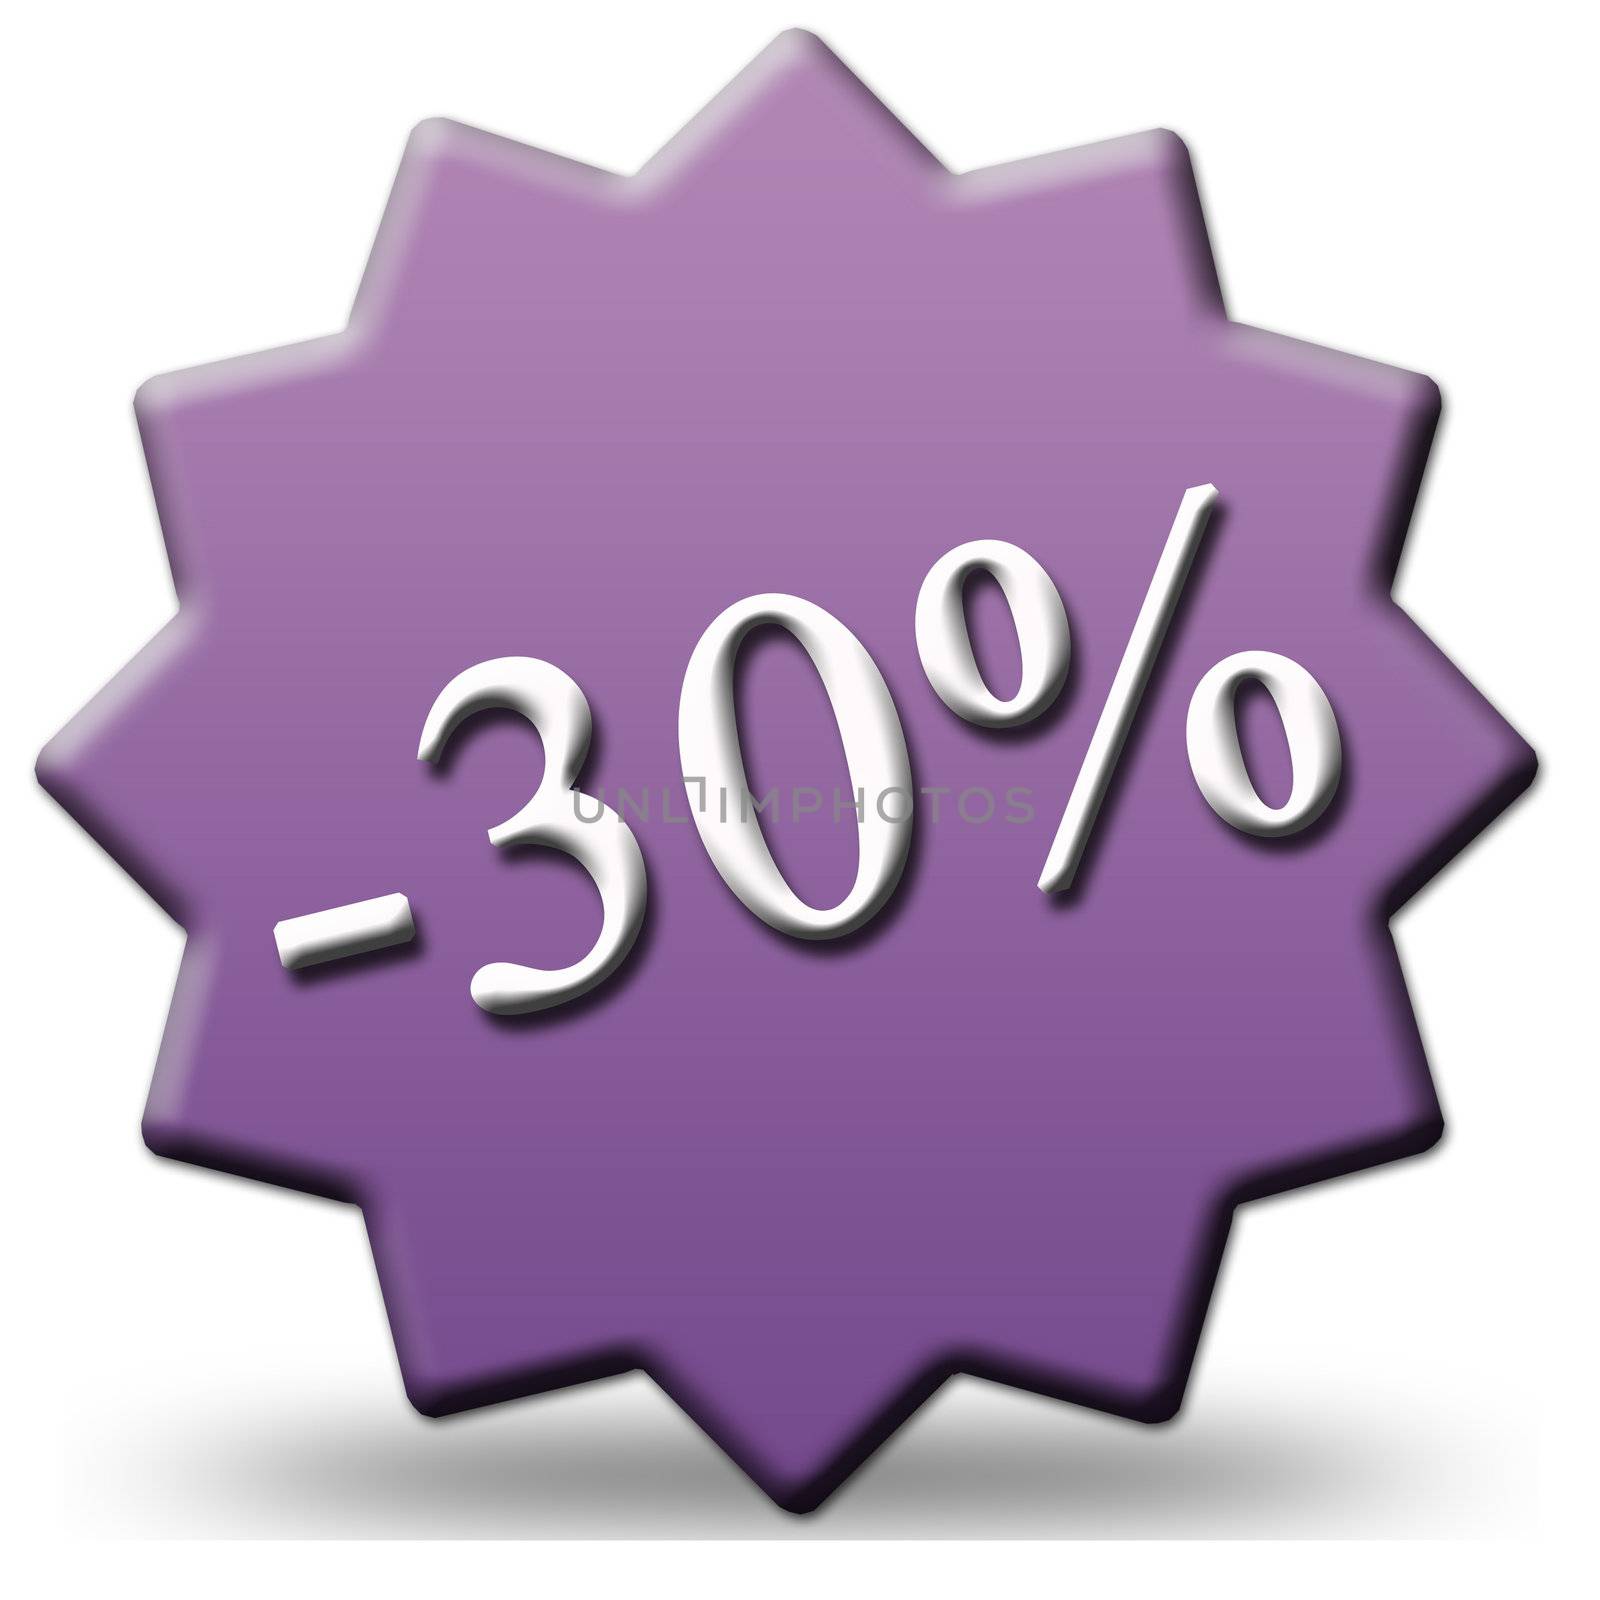 30 percent decrease